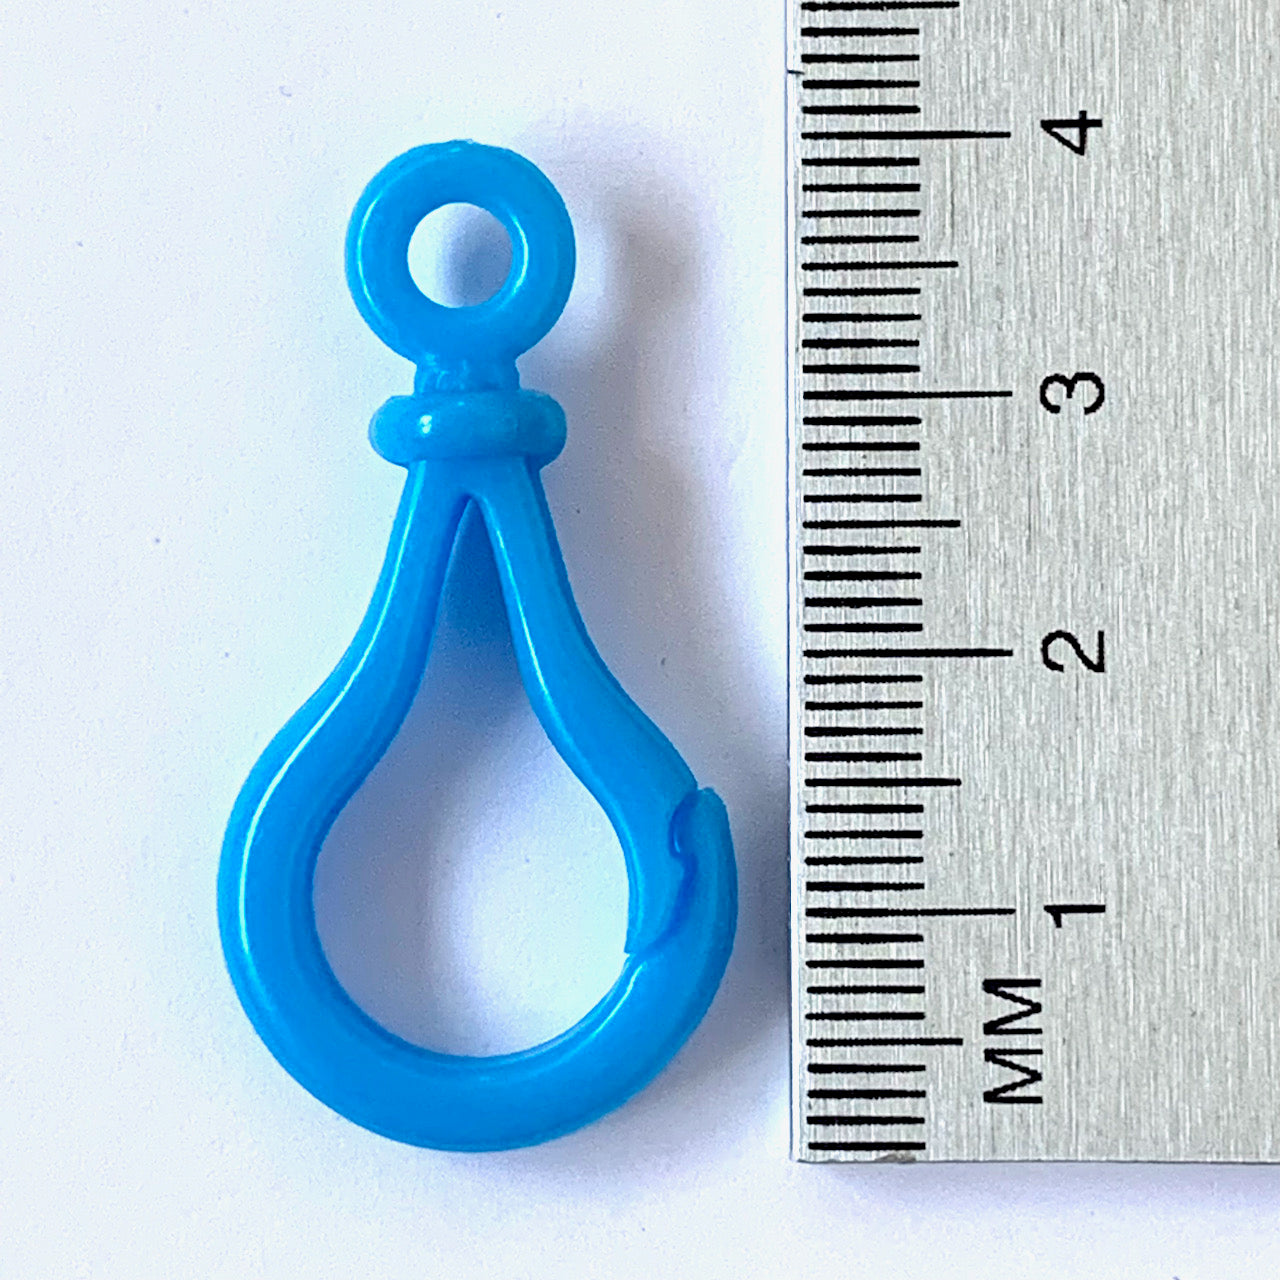 Small Key Rings - 40mm by 20mm  - EN71, REACH & Annex II Compliant